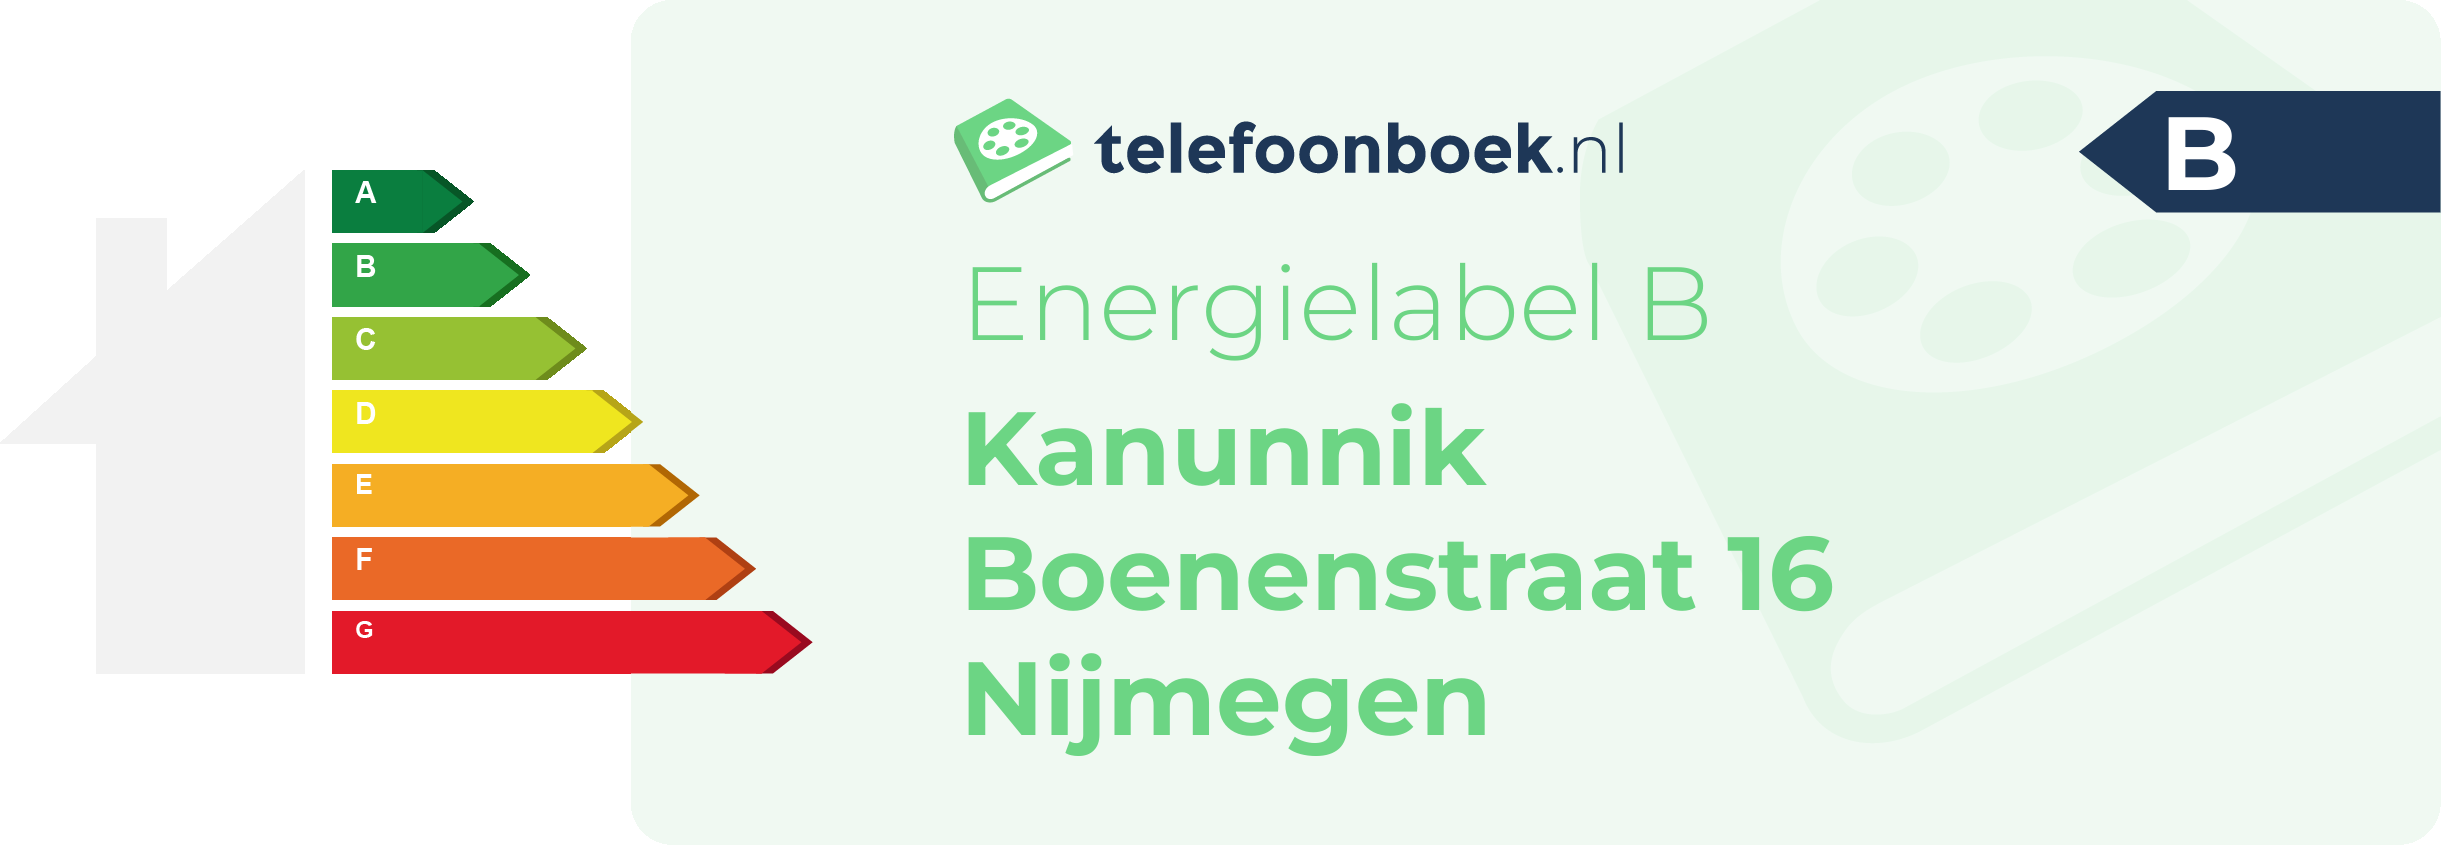 Energielabel Kanunnik Boenenstraat 16 Nijmegen